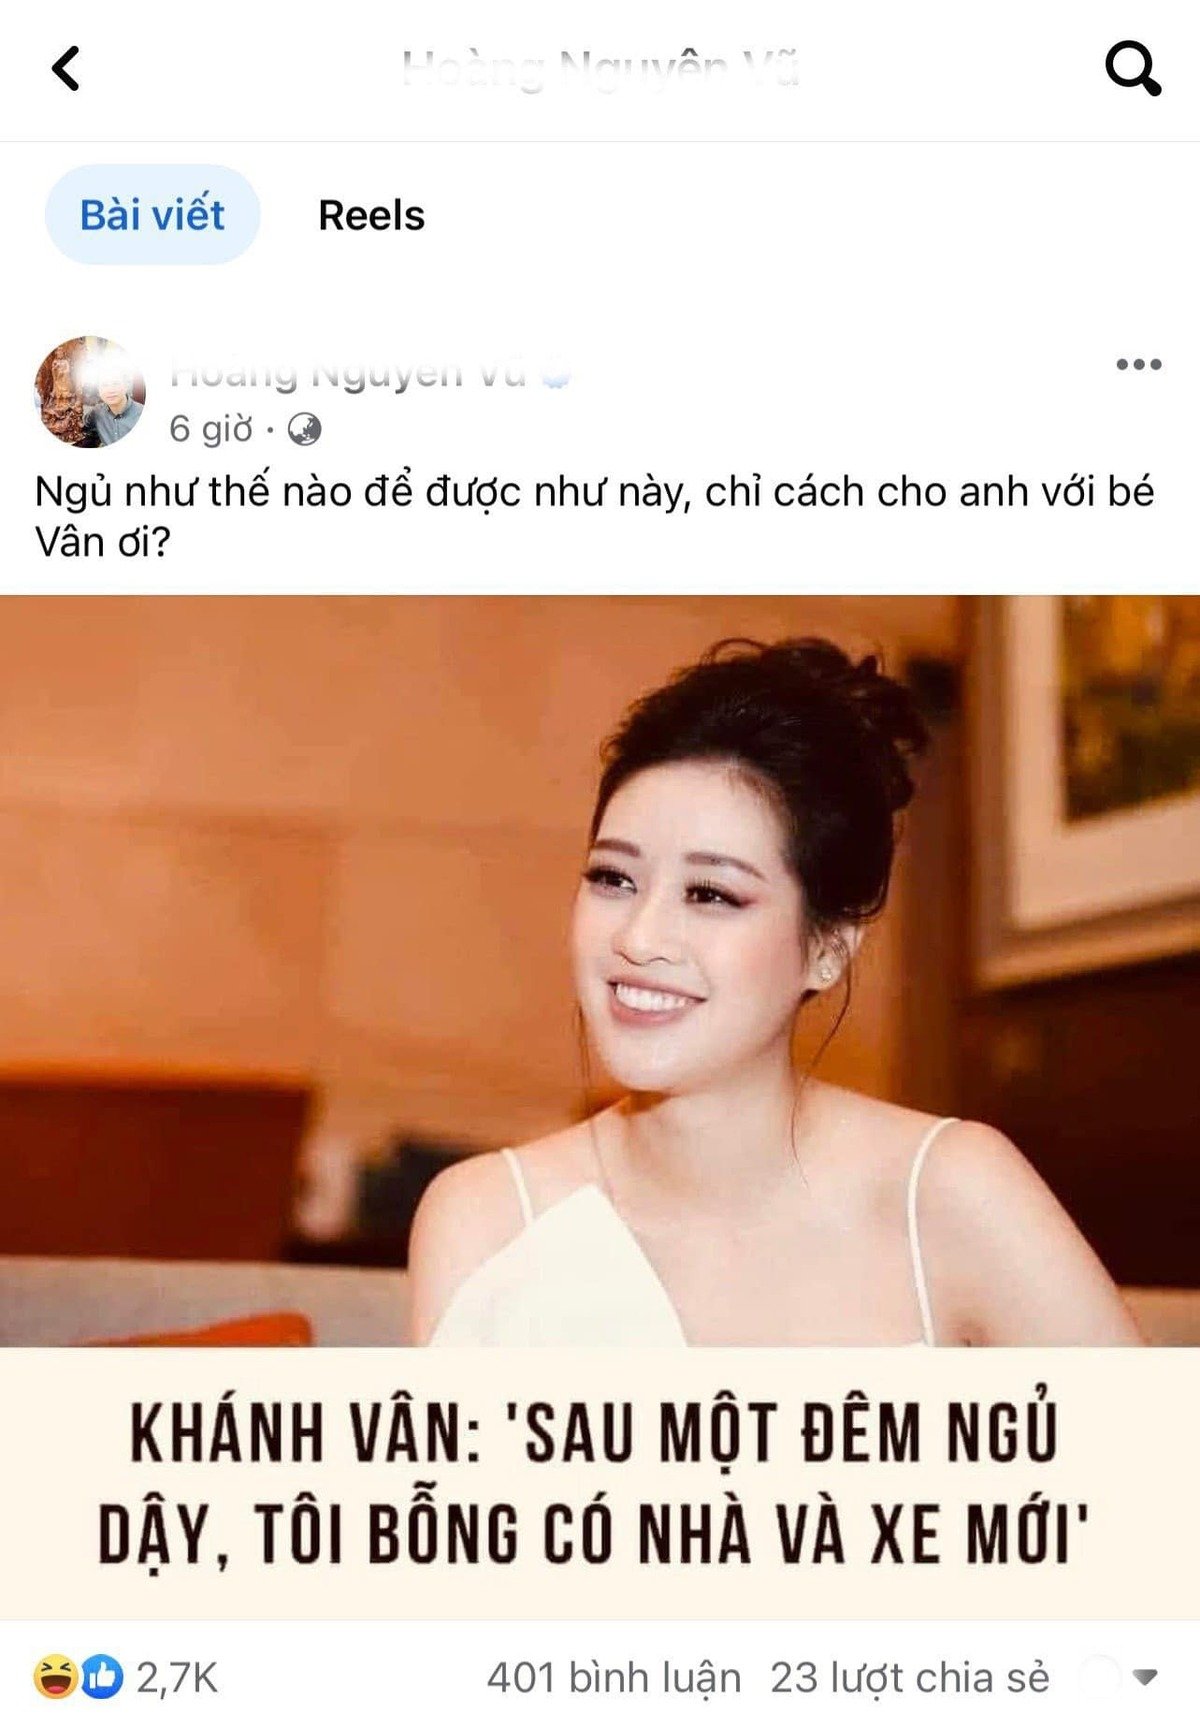 Bài viết của tài khoản tên H.N.V khiến dư luận bàn tán tiêu cực về Hoa hậu Khánh Vân. Ảnh: FBNV